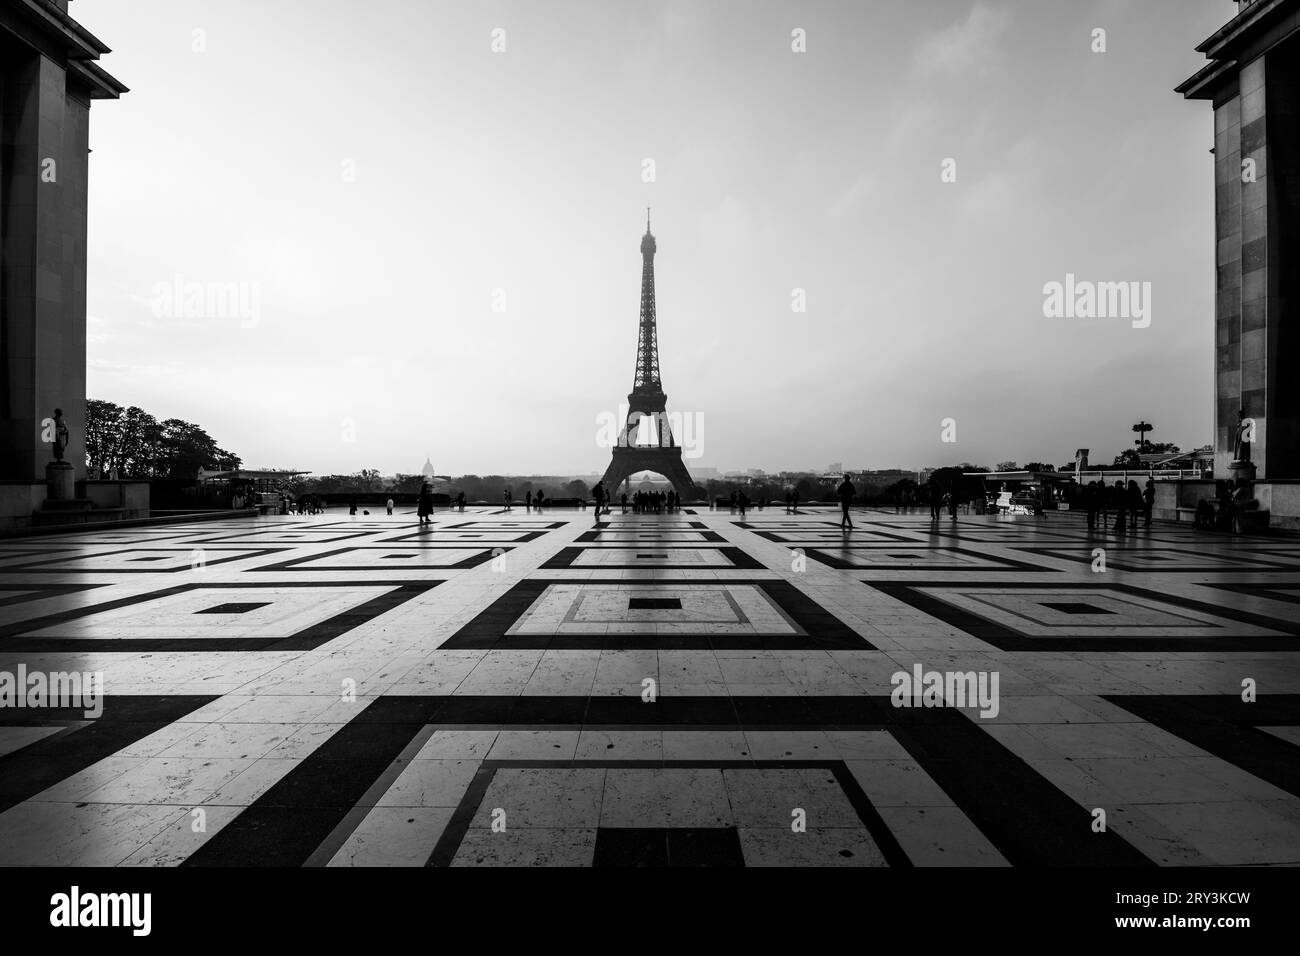 Eiffelturm, Französisch: Eiffelturm, Silhouette bei Sonnenaufgang. Blick vom Trocadero-Platz mit geometrischem Marmorpflaster. Paris, Frankreich. Schwarzweißfotografie. Stockfoto